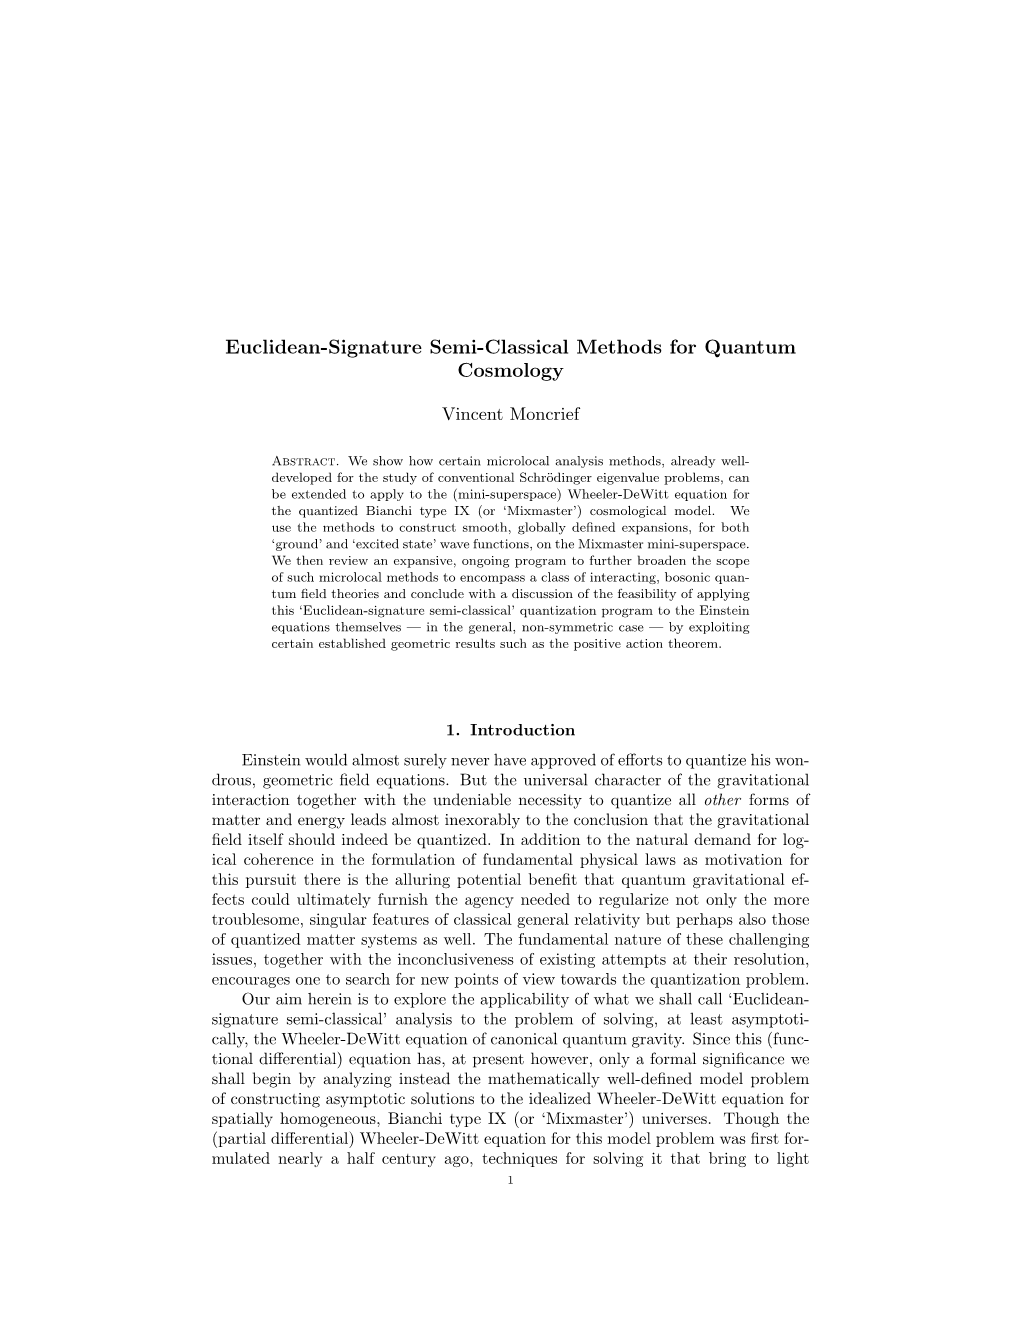 Euclidean-Signature Semi-Classical Methods for Quantum Cosmology